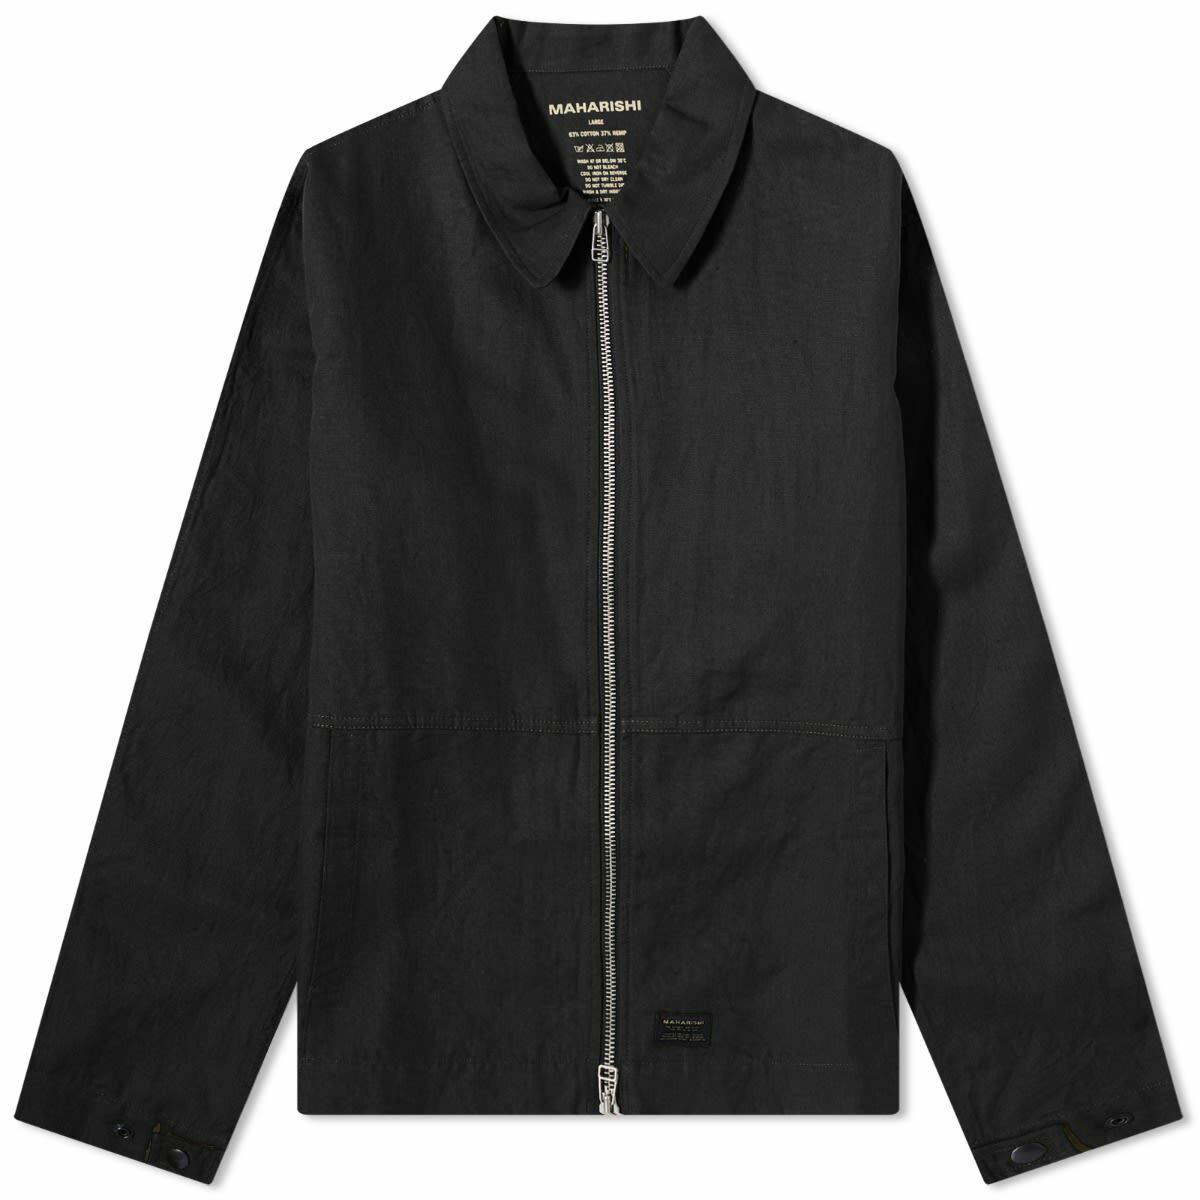 Maharishi Men's MILTYPE Deck Jacket in Black Maharishi